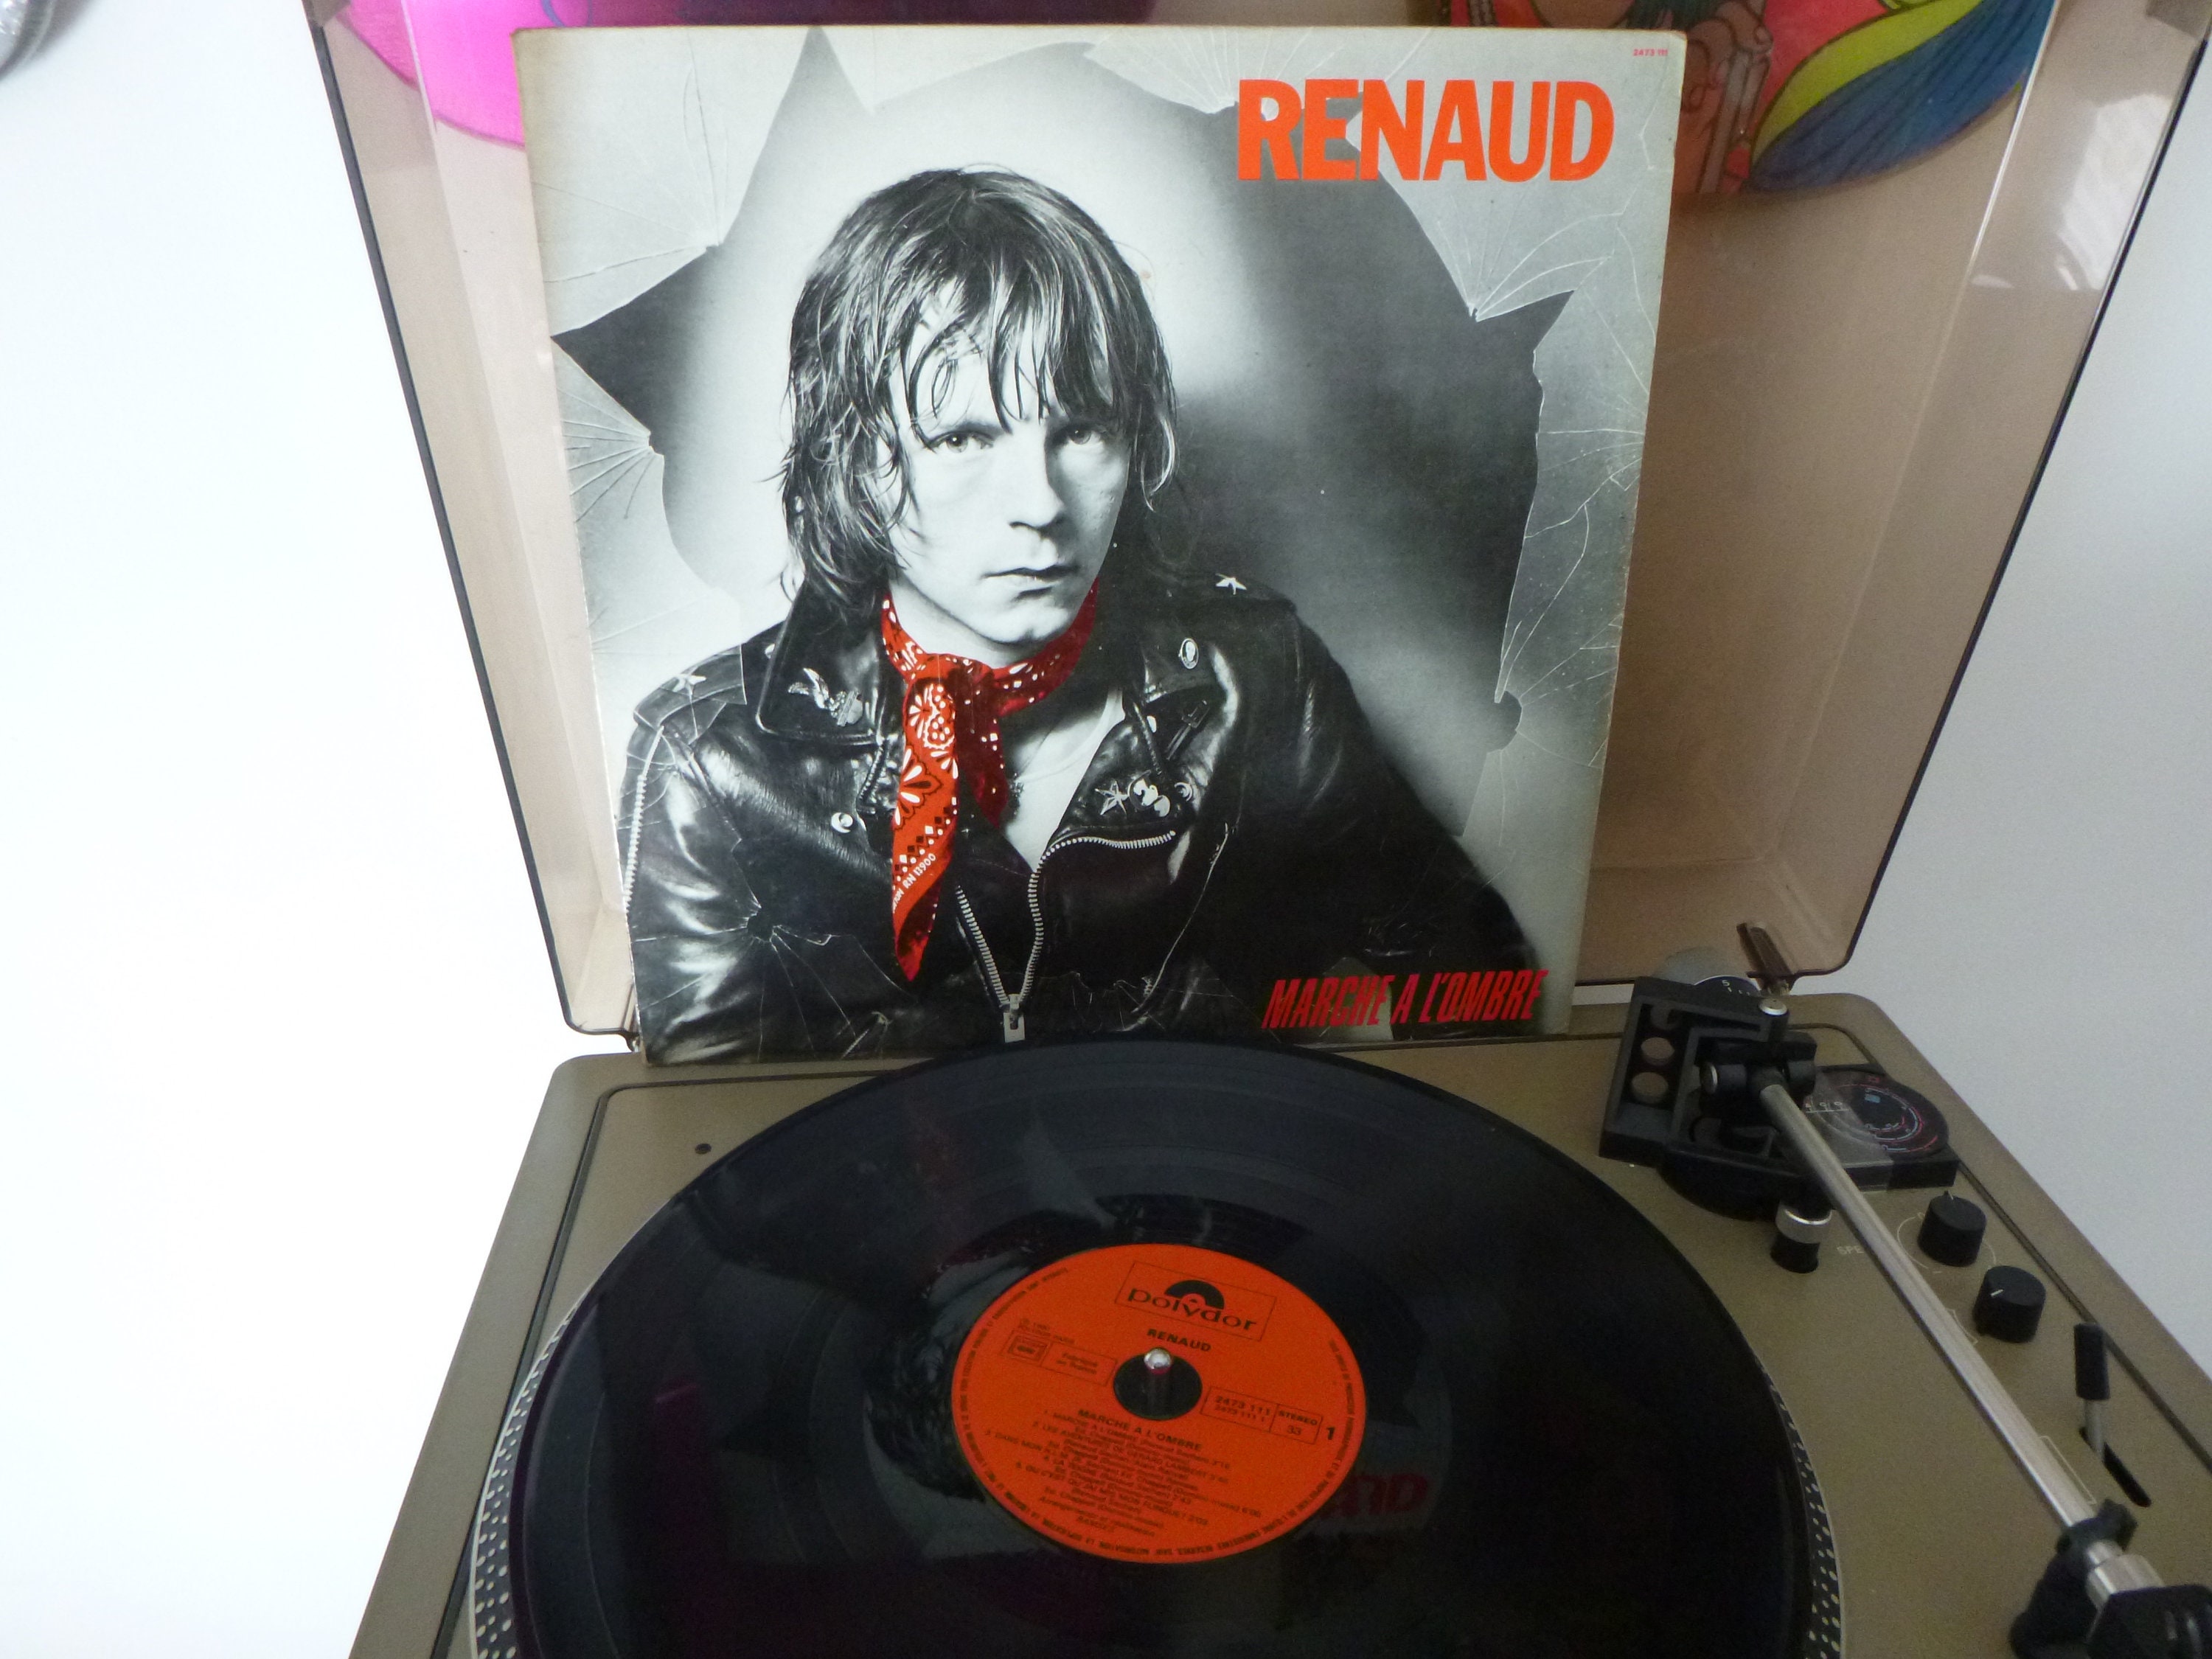 Vinyle 33 tours de Renaud Marche à l'ombre en bel état (1980) - Enchères  Luxembourg